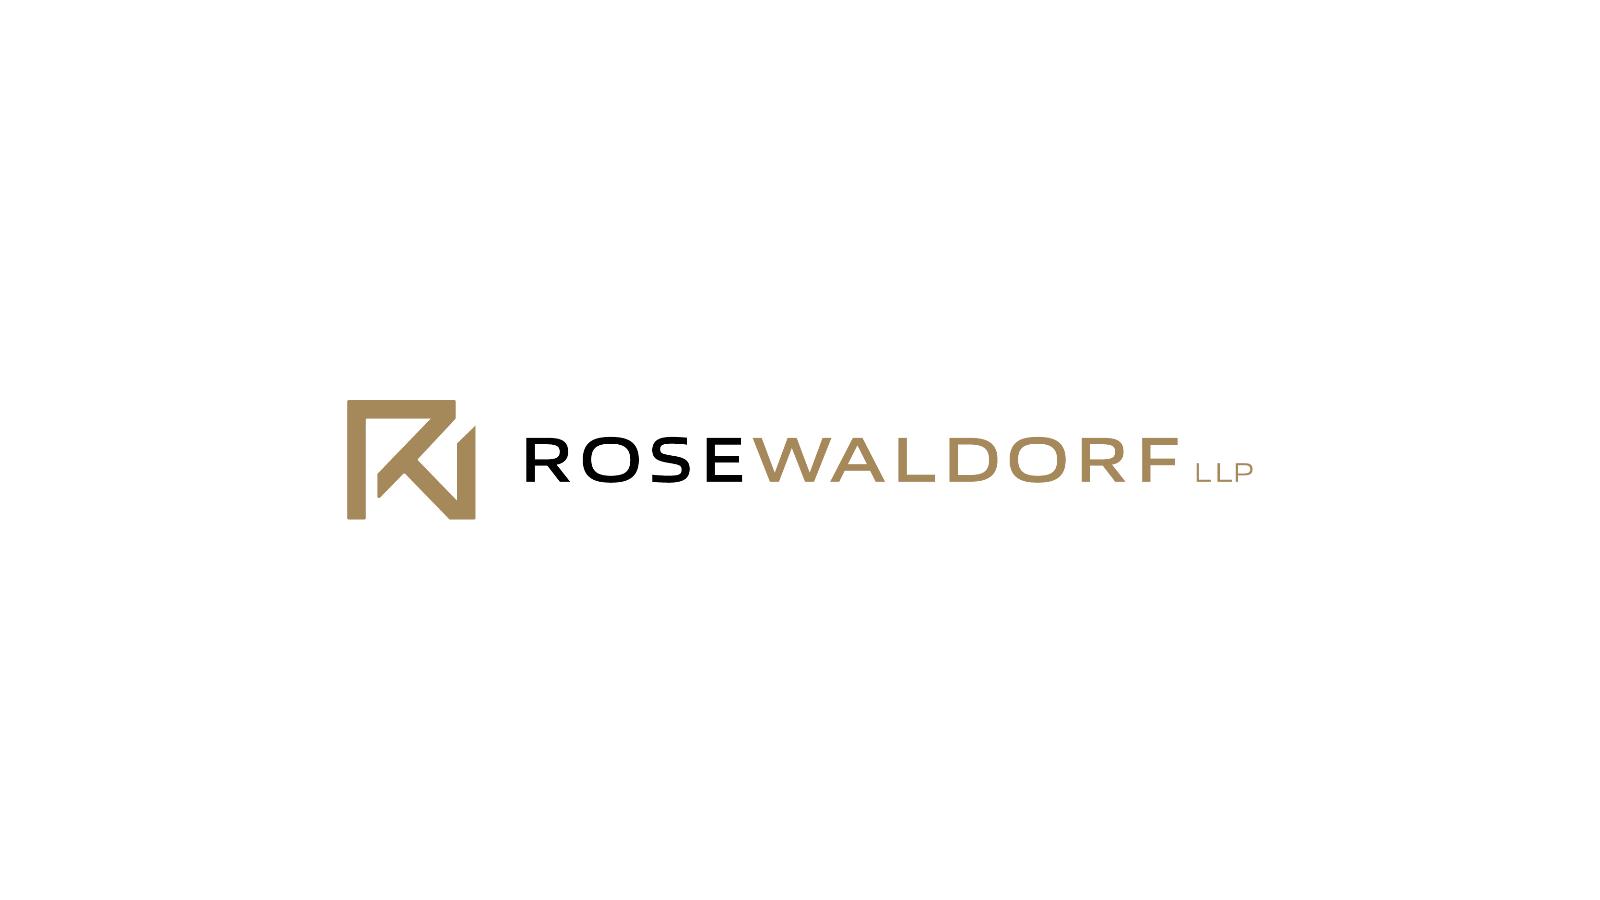 RoseWaldorf LLP | logo on white